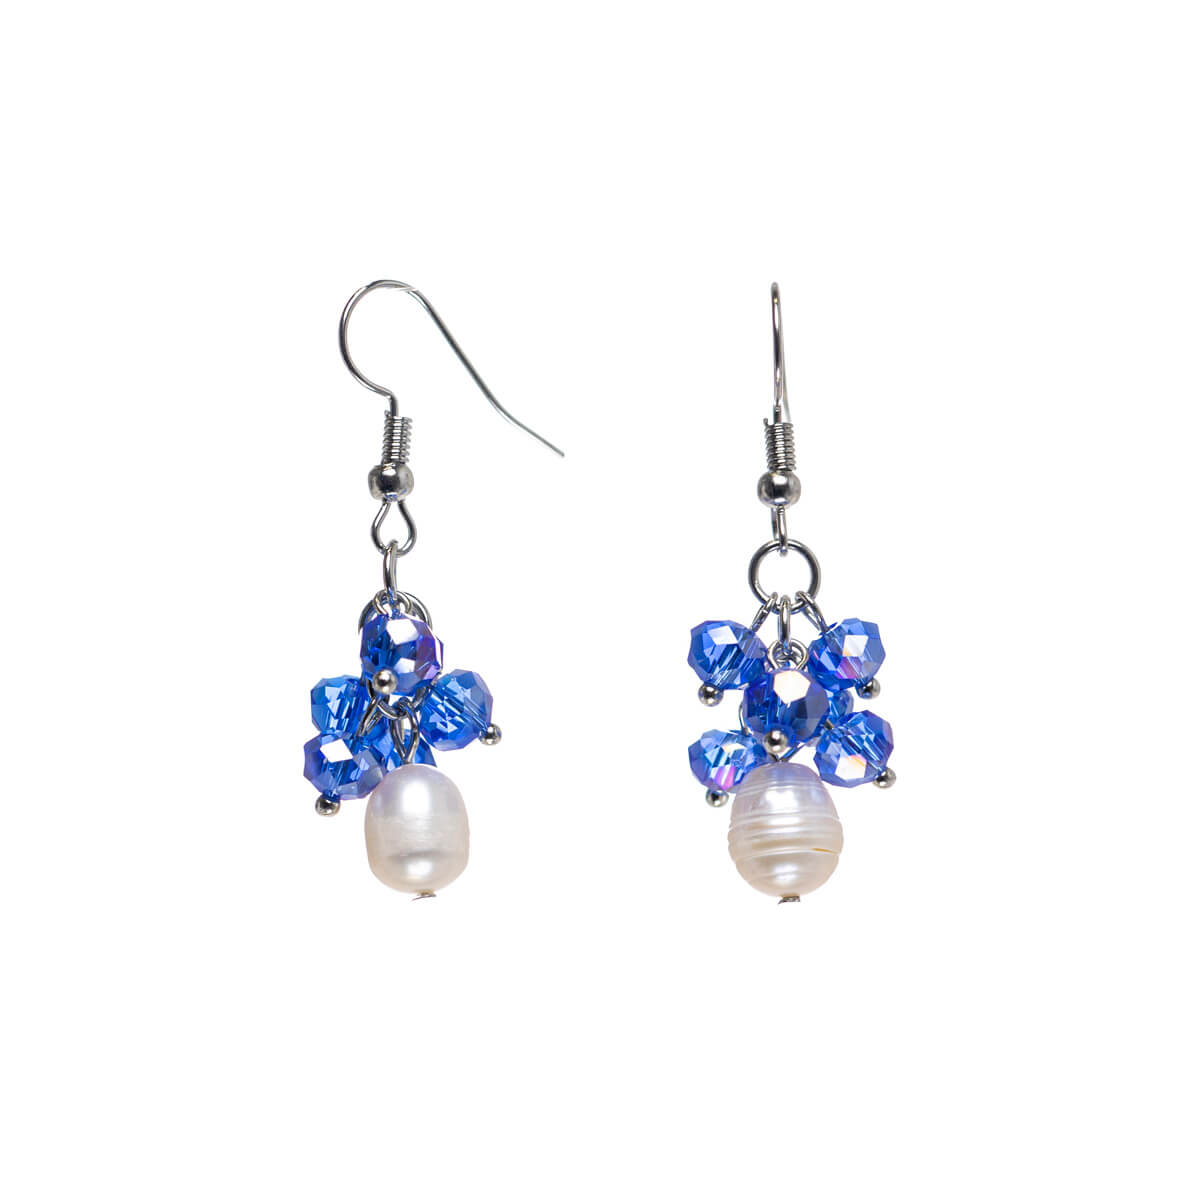 Pearl cluster earrings